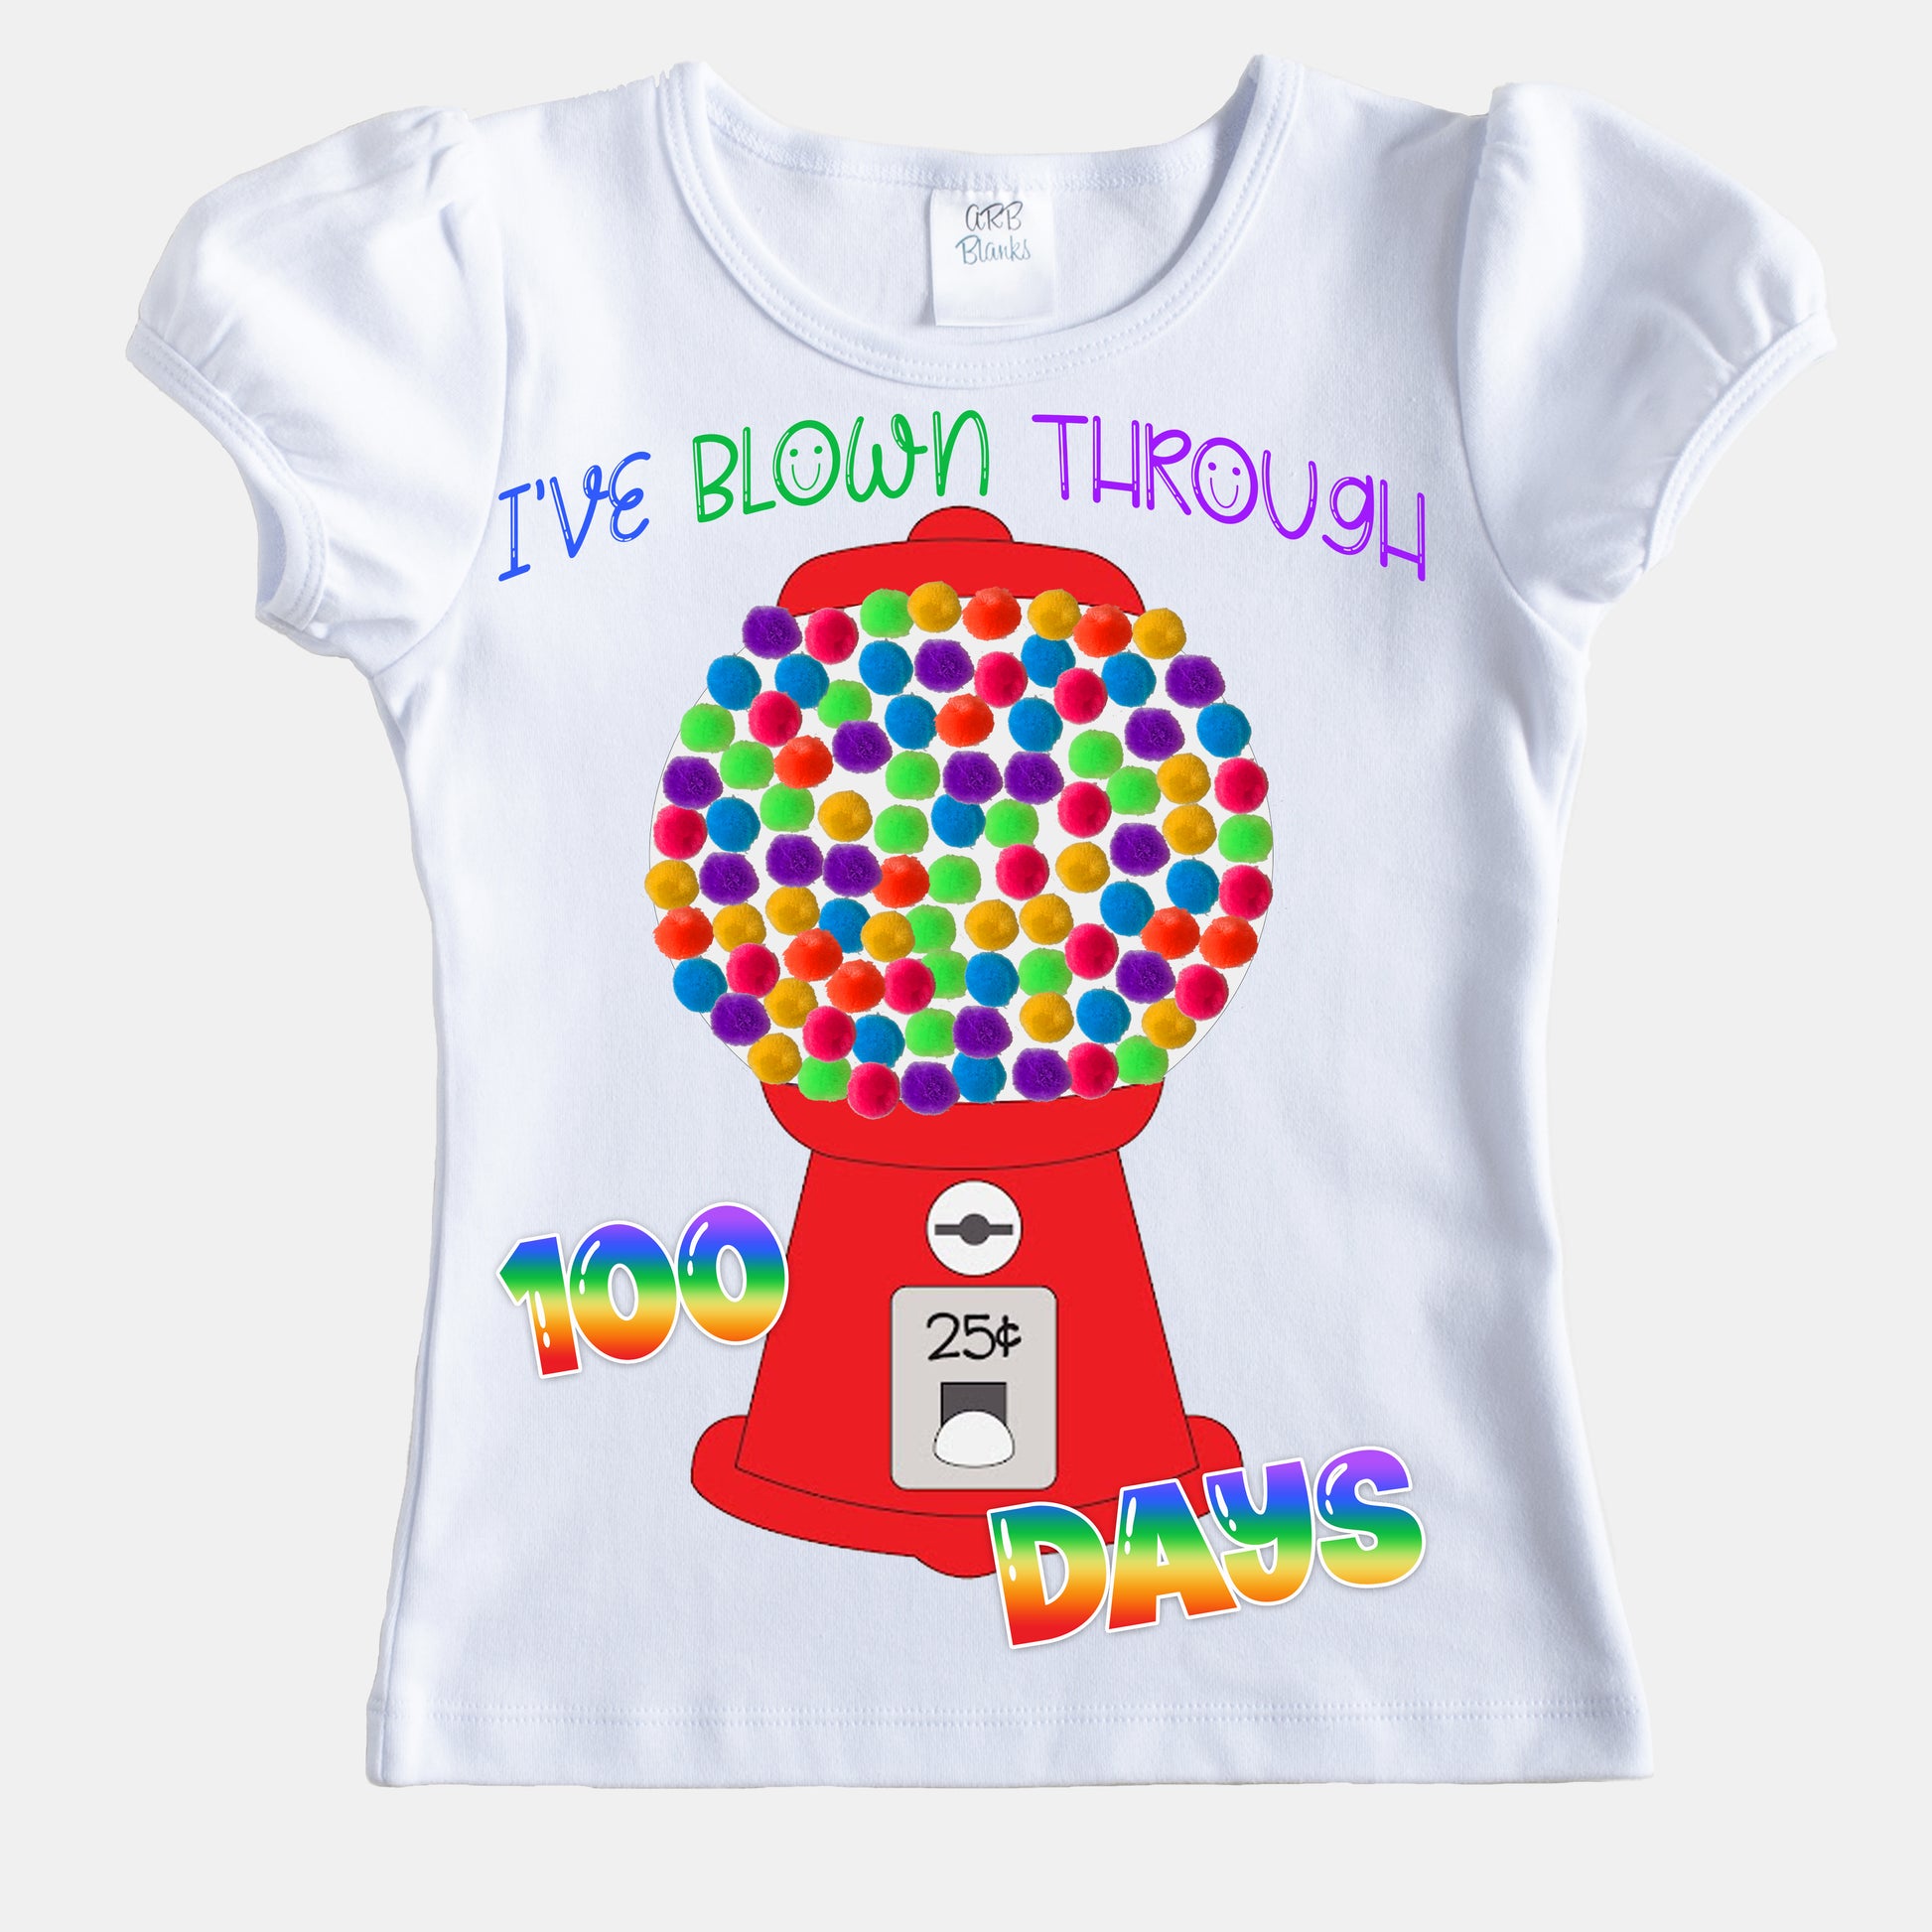 DIY 100th day of school shirt kit bubblegum